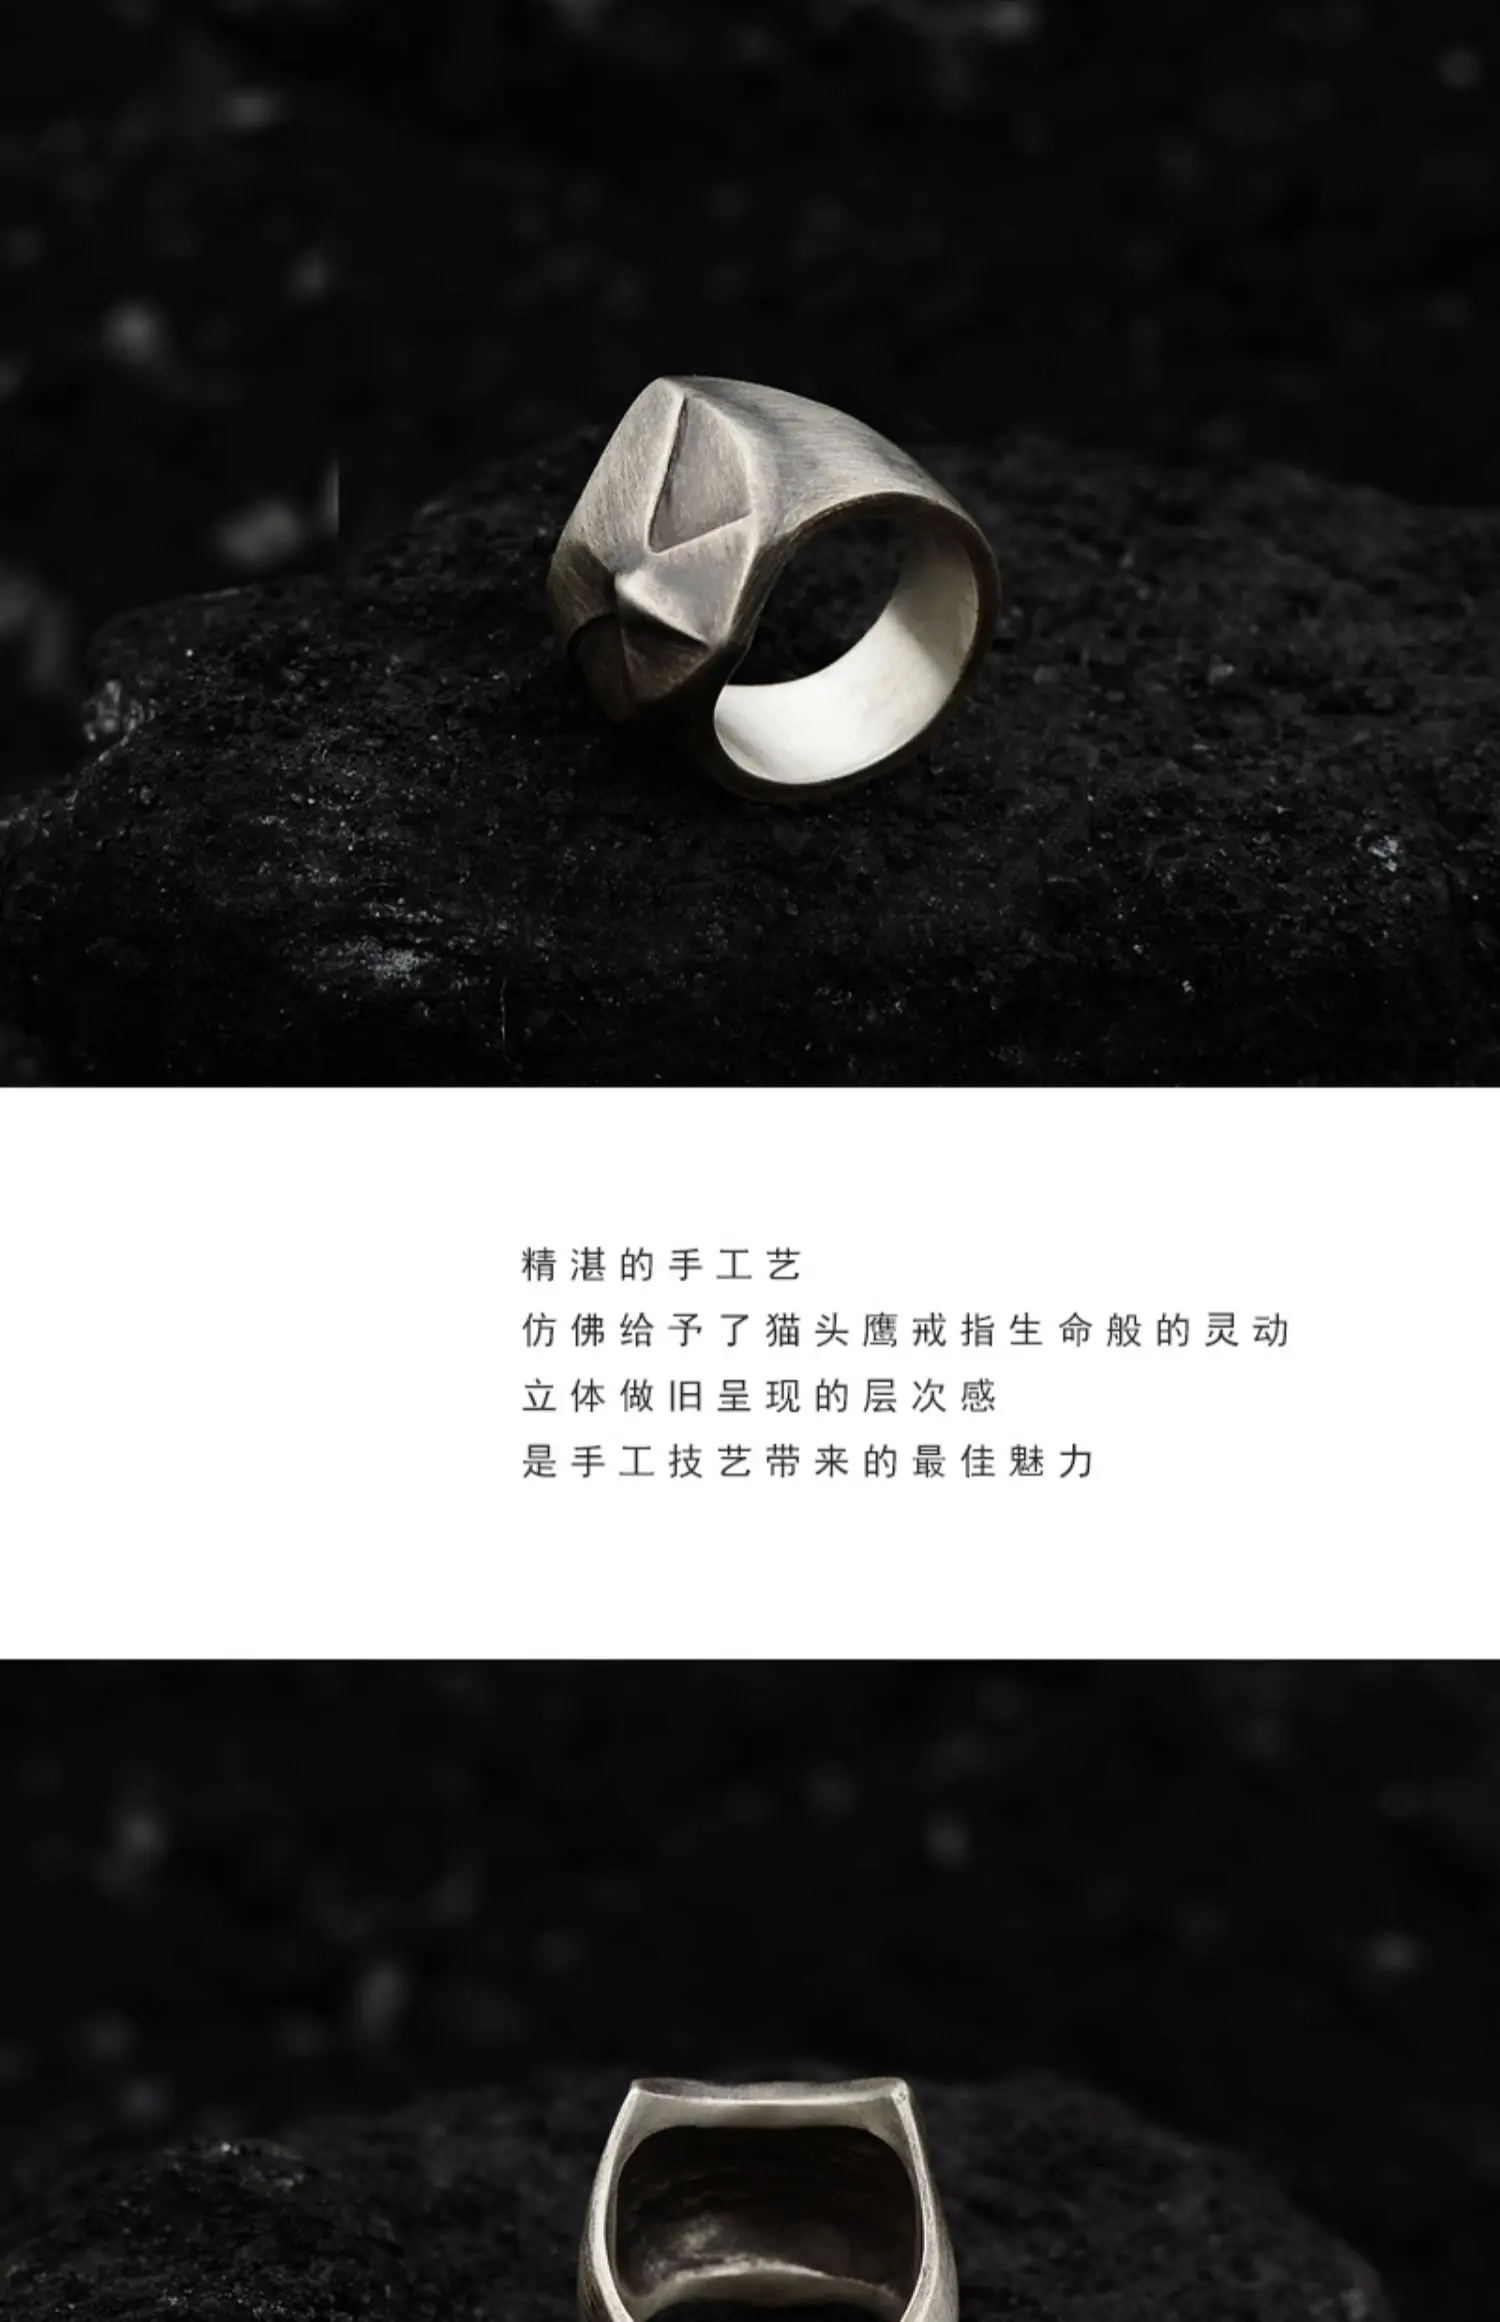 Дизайн вручную, Стерлинговое Серебро 925 пробы, индивидуальное ночное кольцо в виде совы, кольцо king для мужчин и женщин